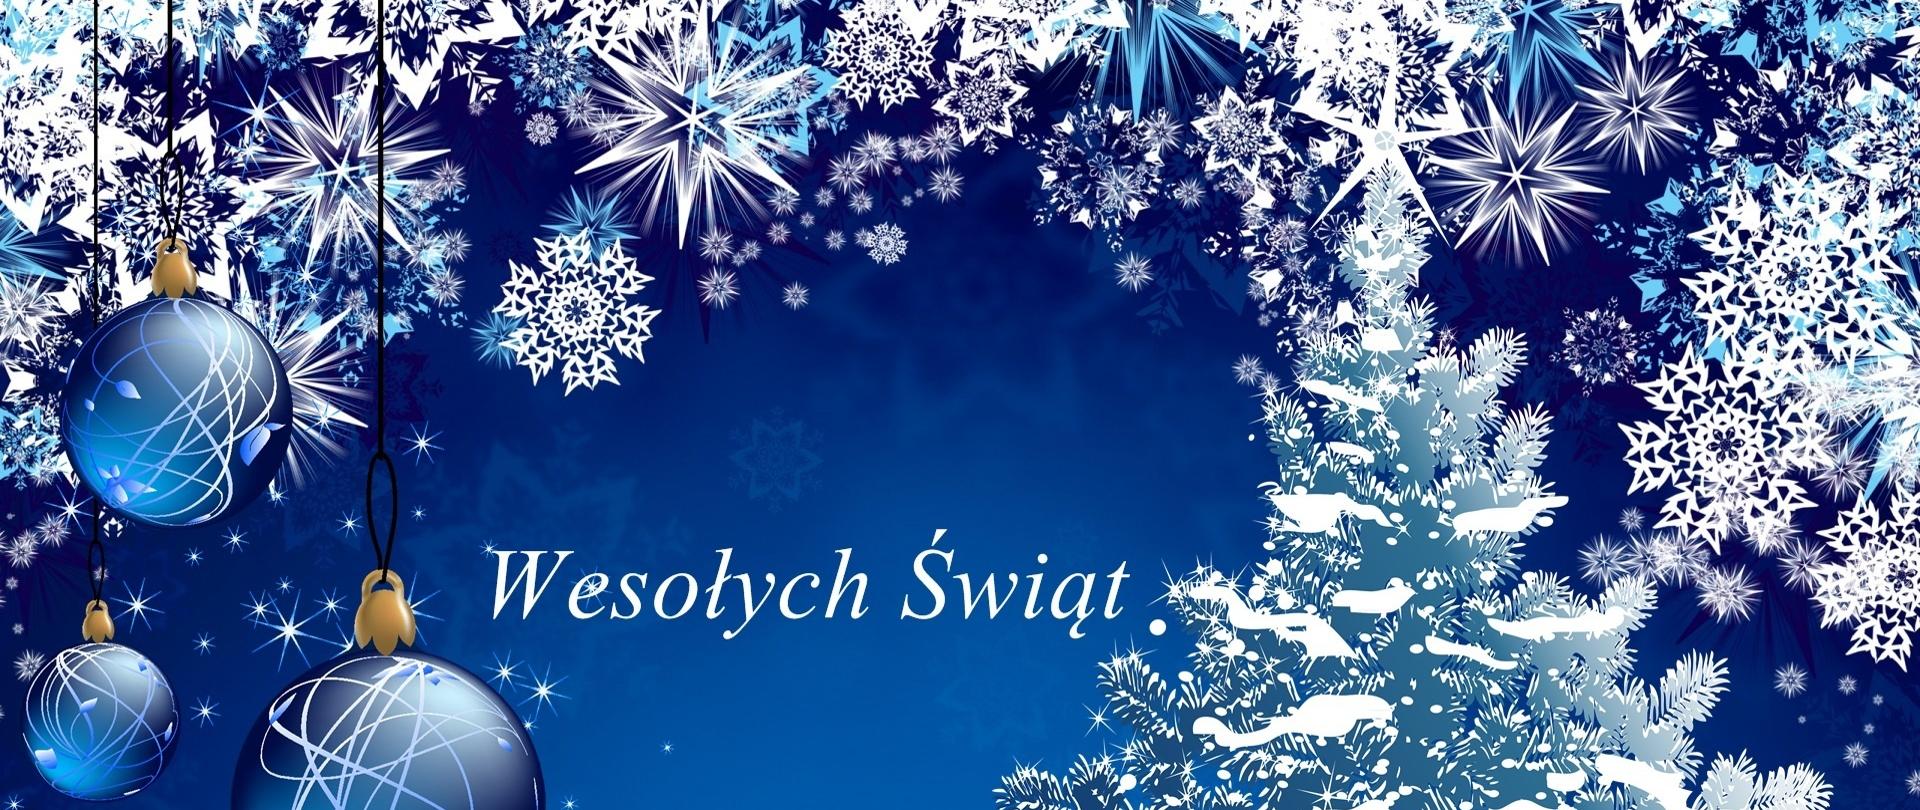 Zdjęcie przedstawia kartkę bożonarodzeniową koloru niebieskiego, choinkę i bombki oraz napis wesołych świąt